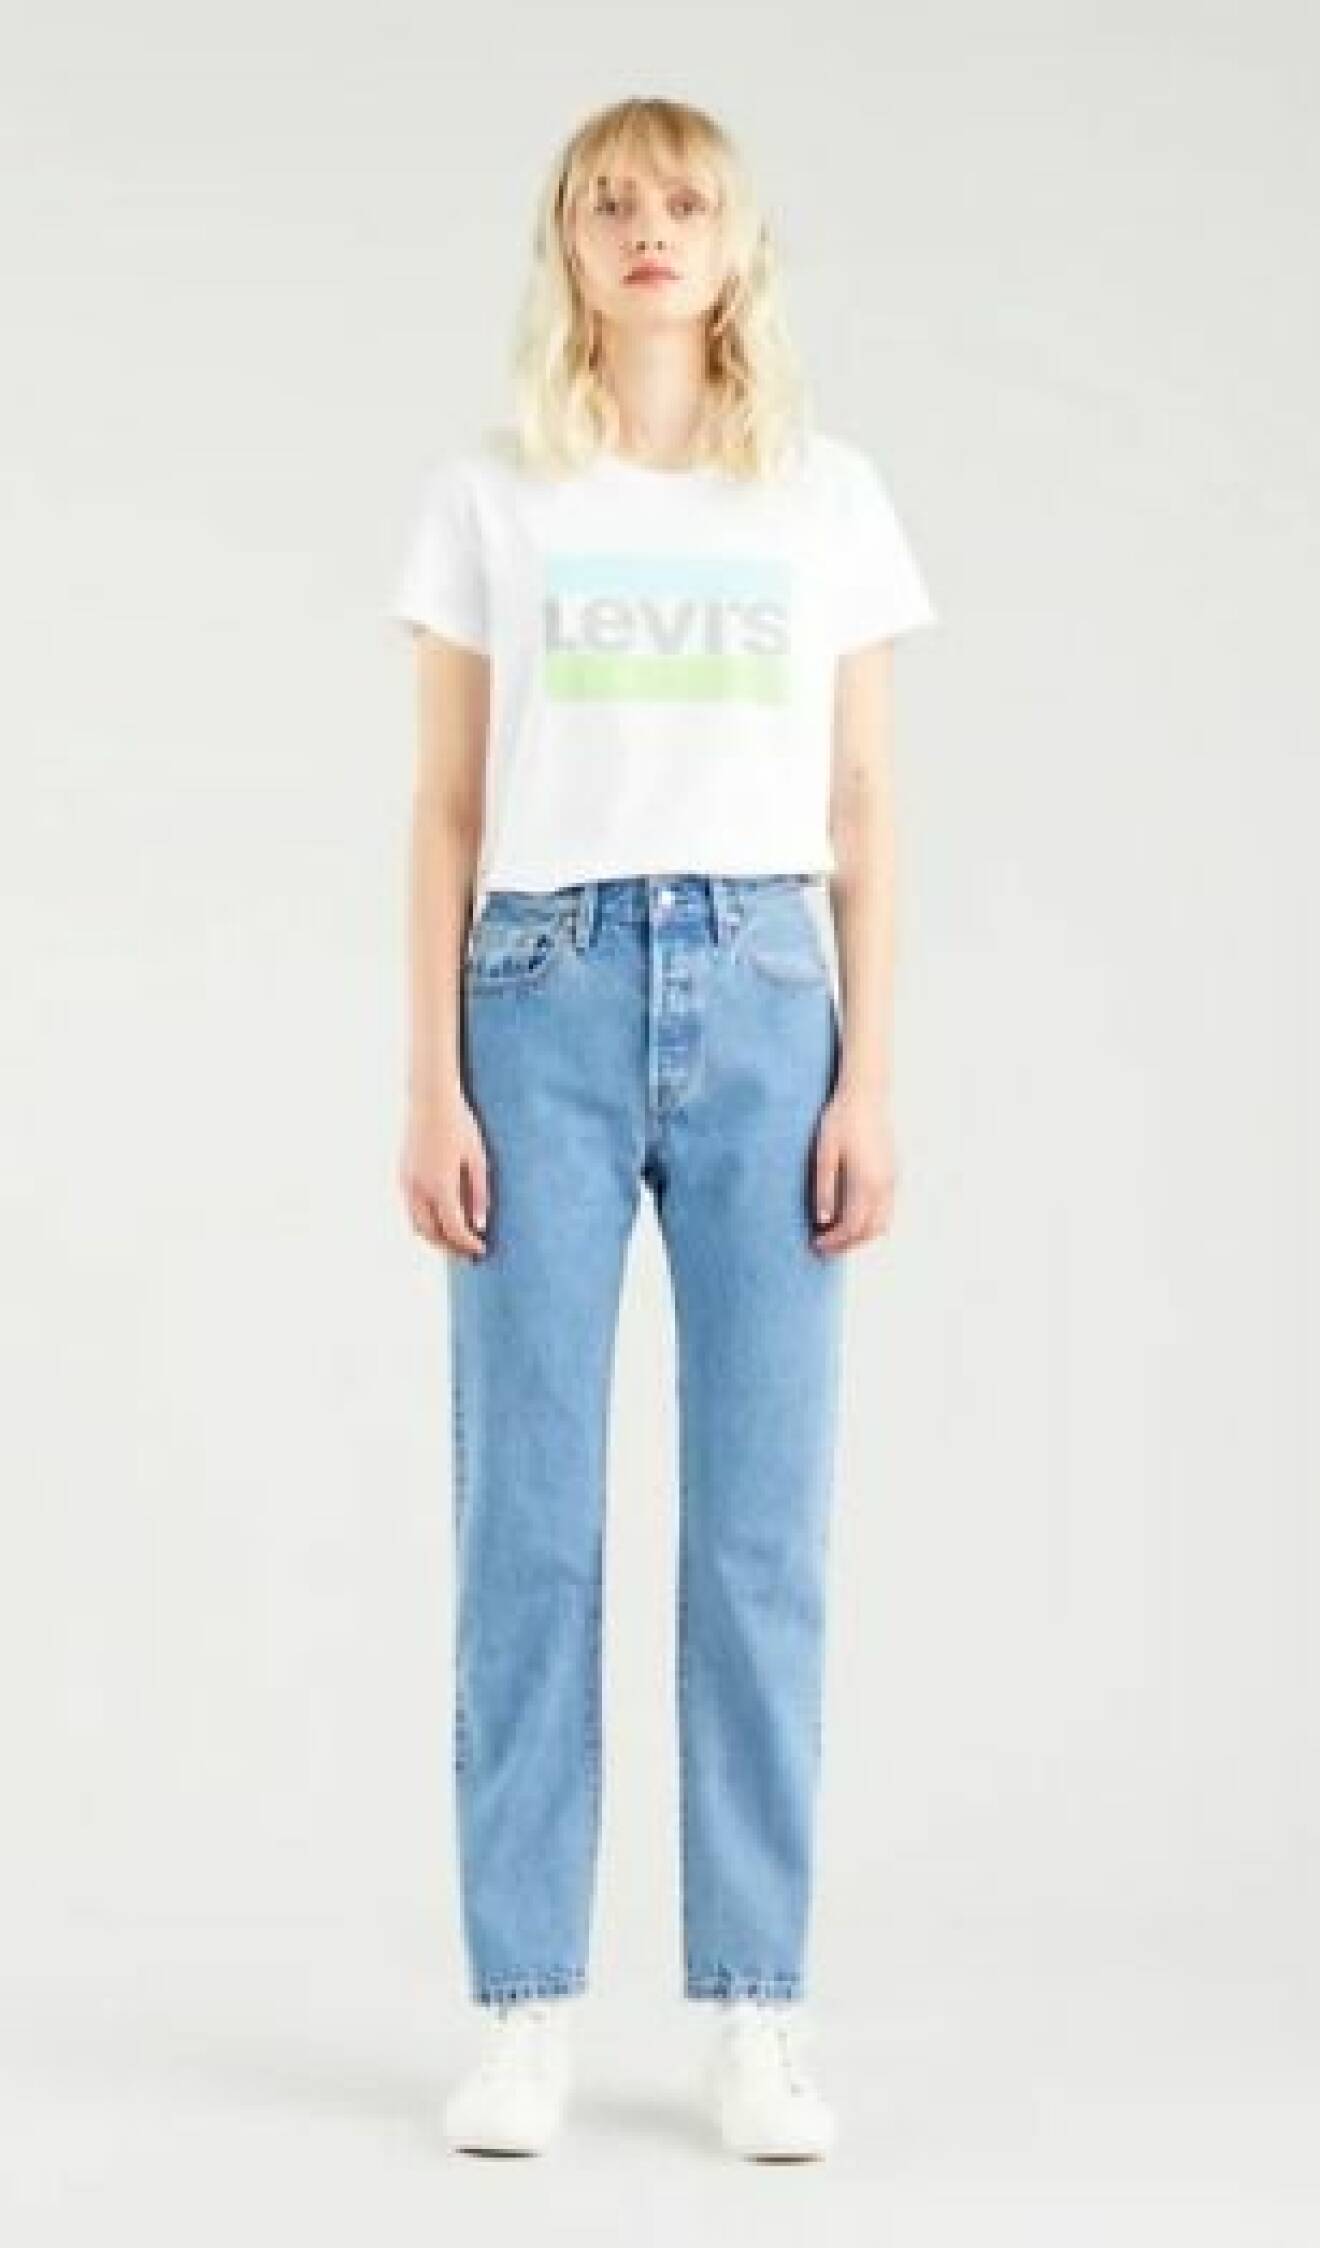 Modell med Levis 501-jeans och t-shirt med Levis loggan.